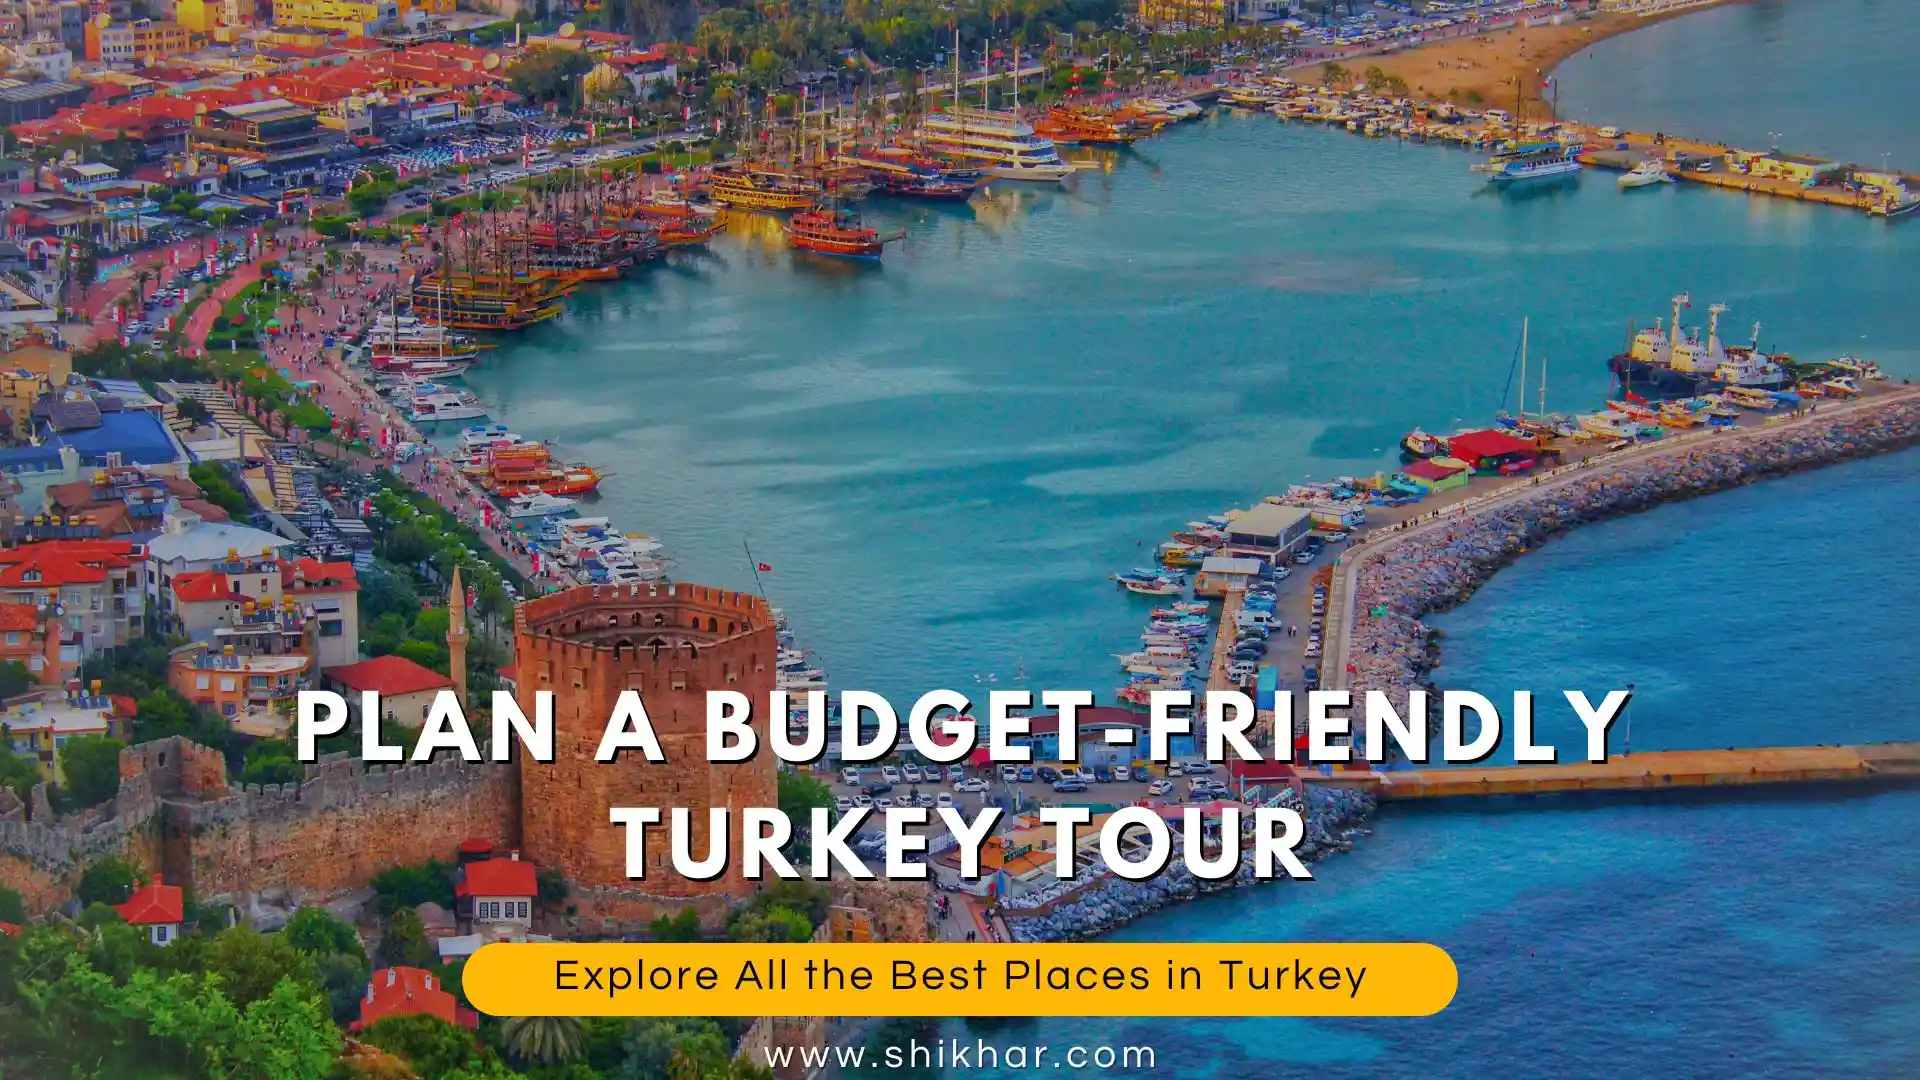 Turkey Tour in Budget